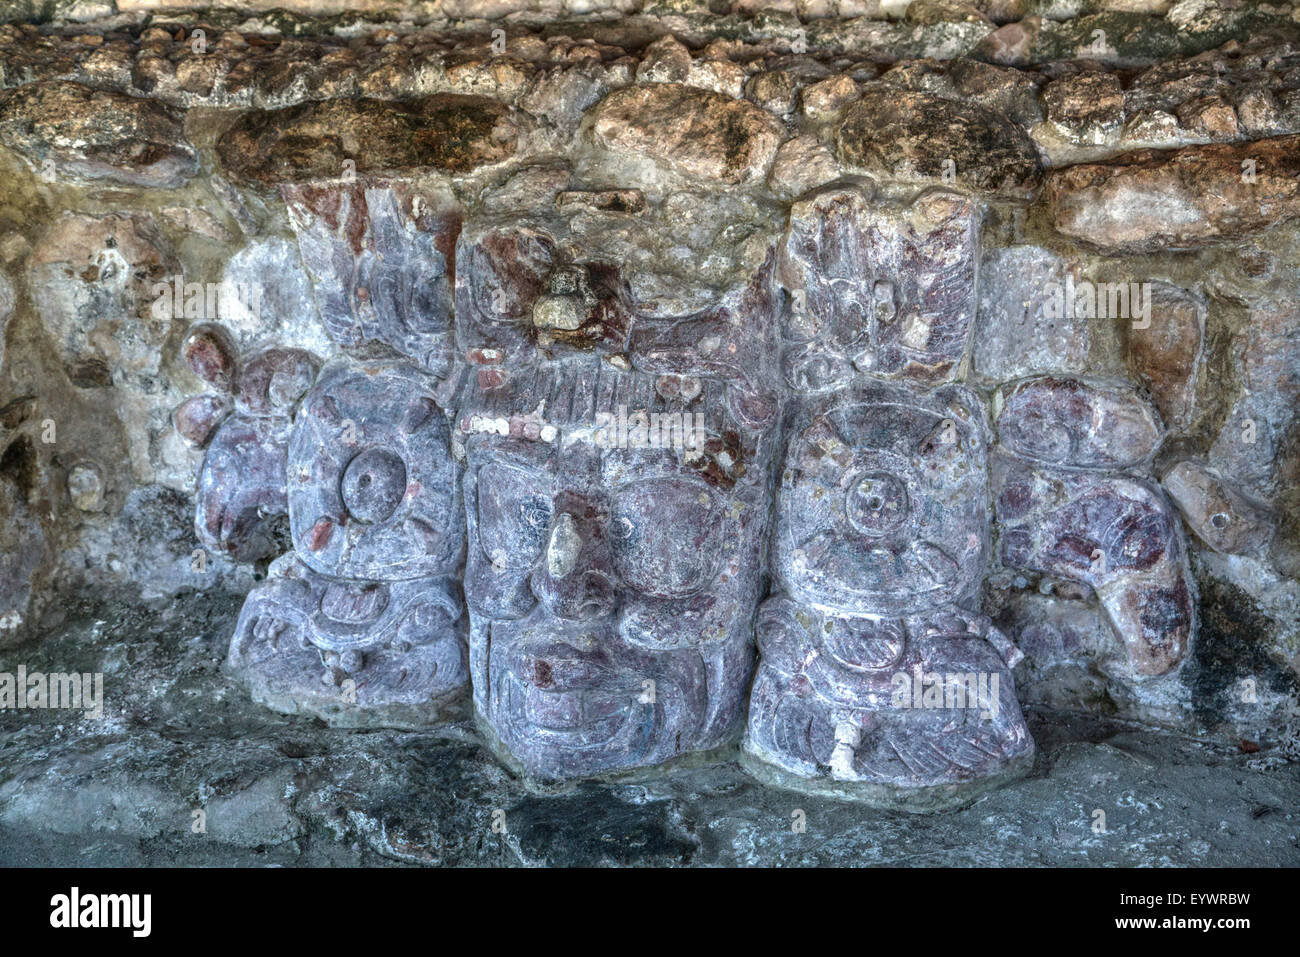 Les masques de pierre sculptée, temple des Masques, Edzna, site archéologique maya, Tulum, Mexique, Amérique du Nord Banque D'Images